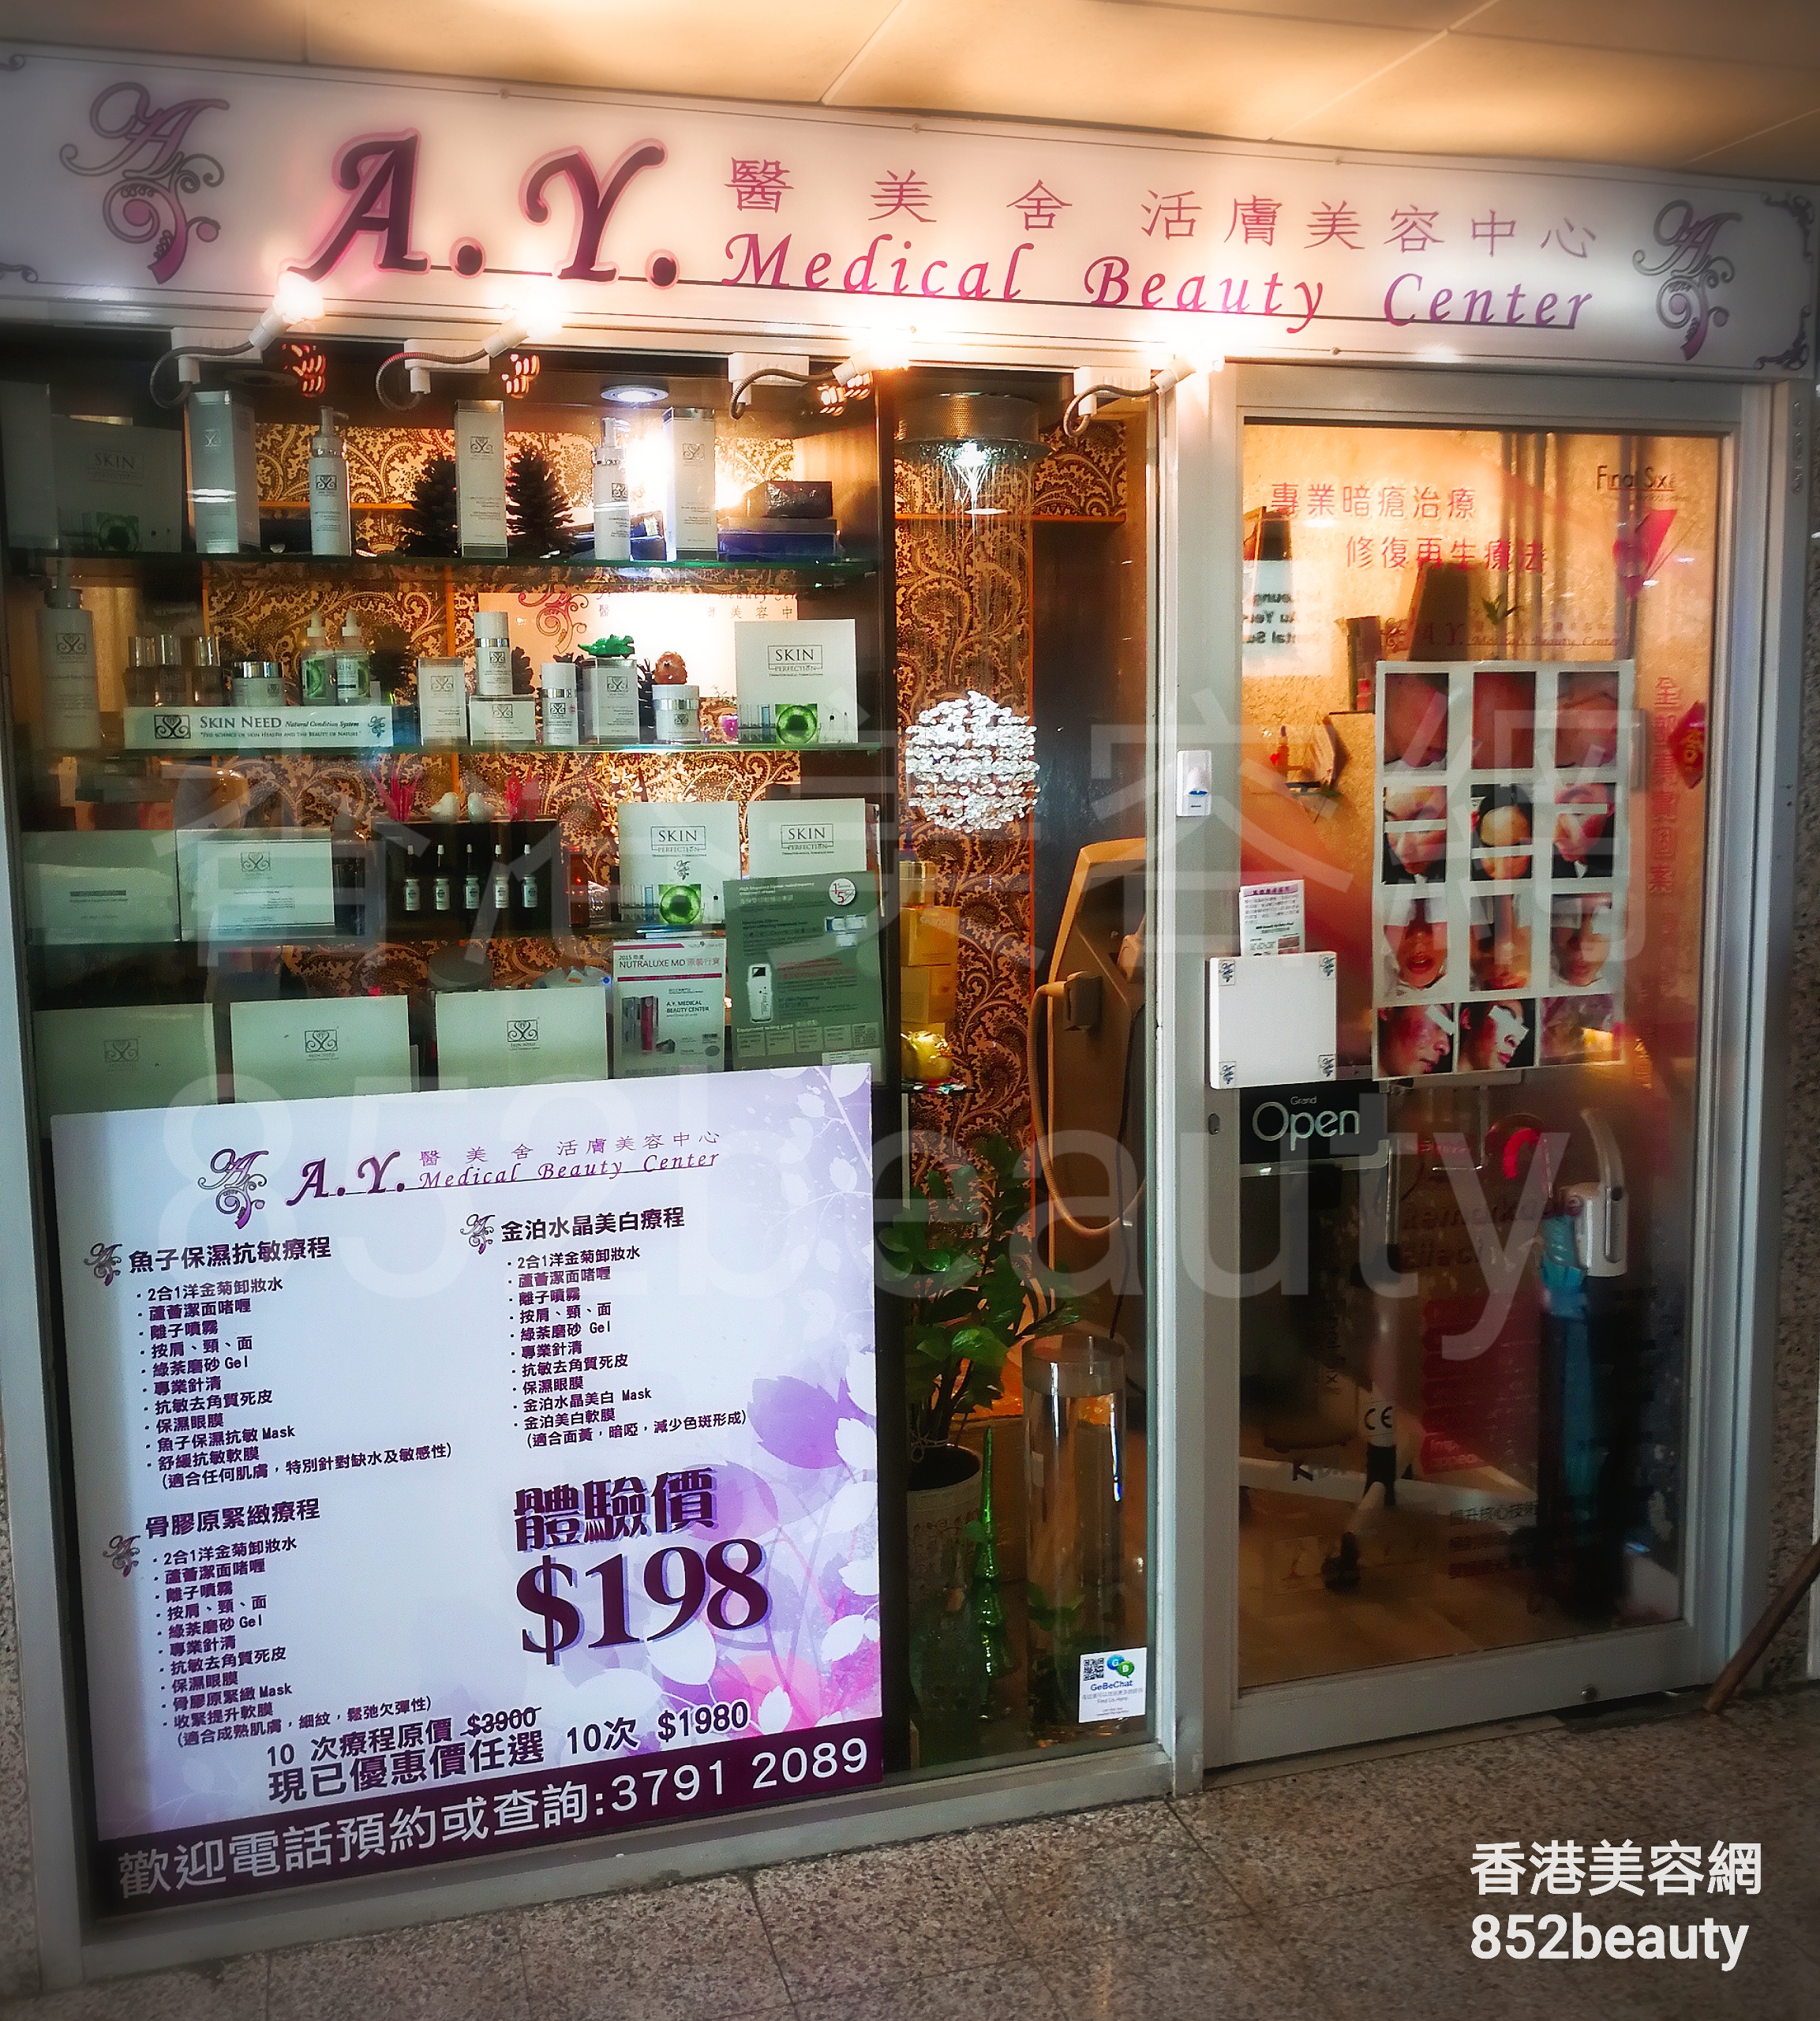 香港美容網 Hong Kong Beauty Salon 美容院 / 美容師: A.Y. Medical Beauty Center 醫美舍活膚美容中心